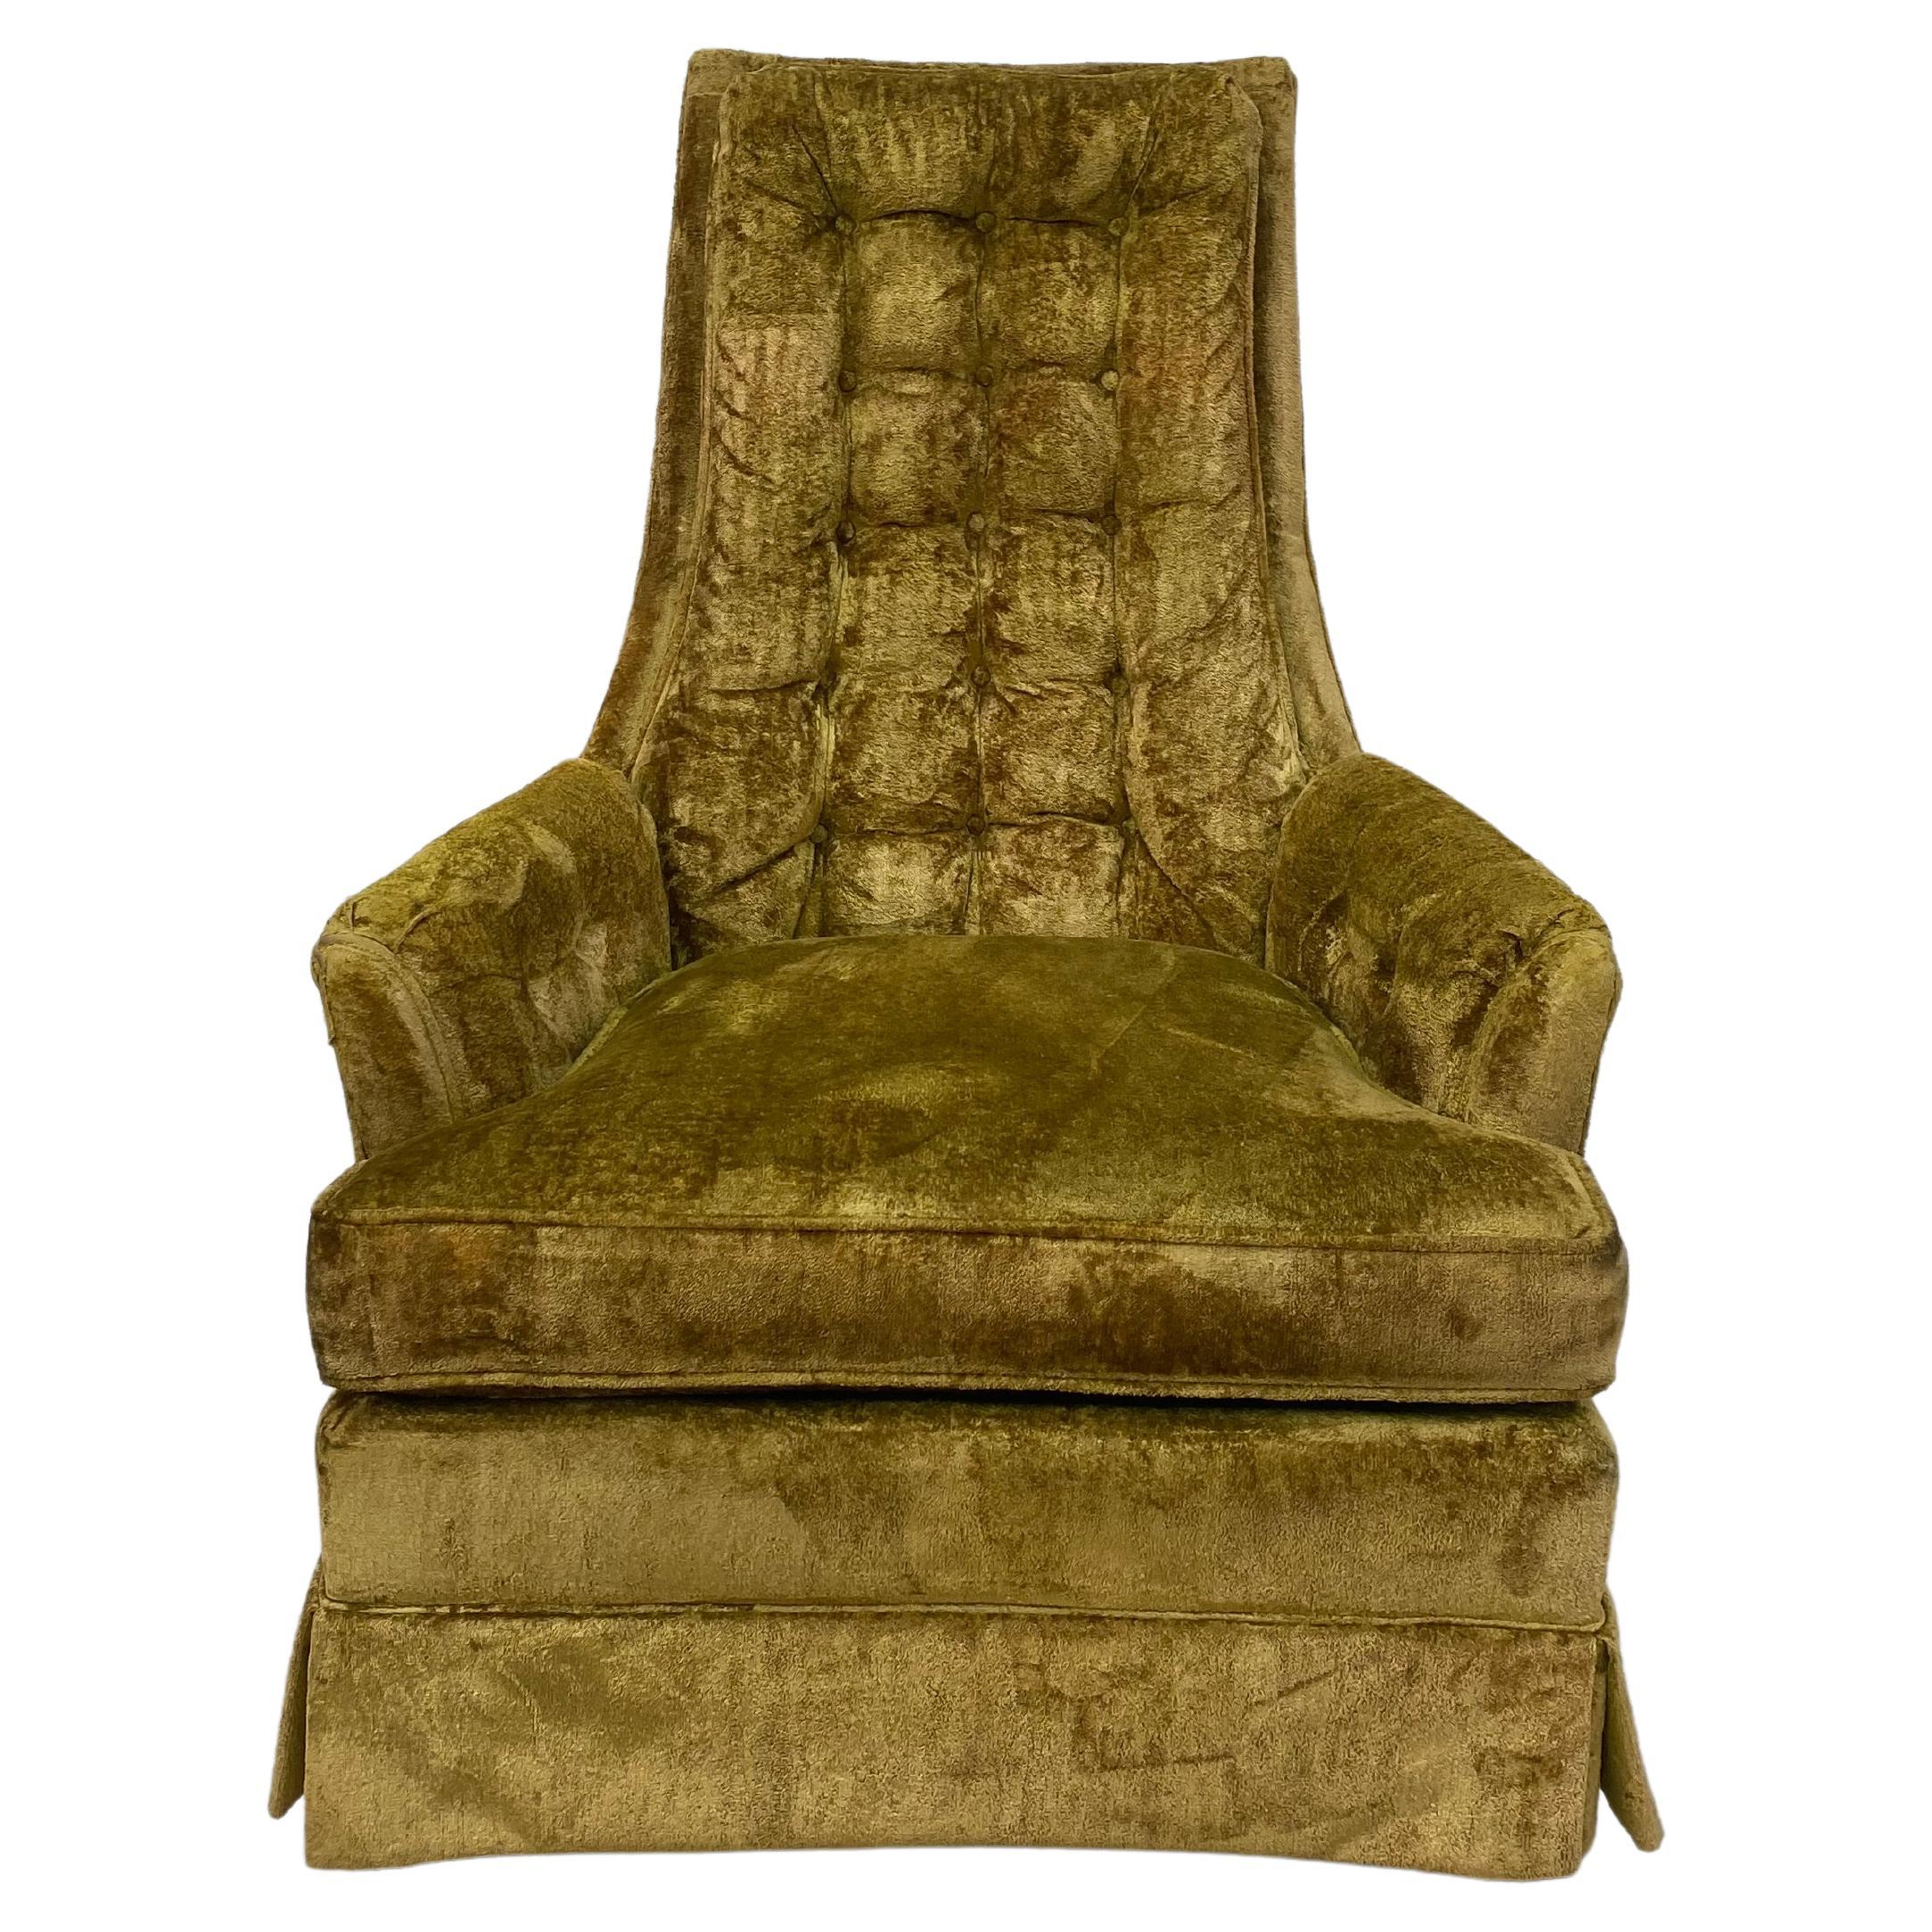 Kroehler Style High Back Tufted Velvet Lounge Chair